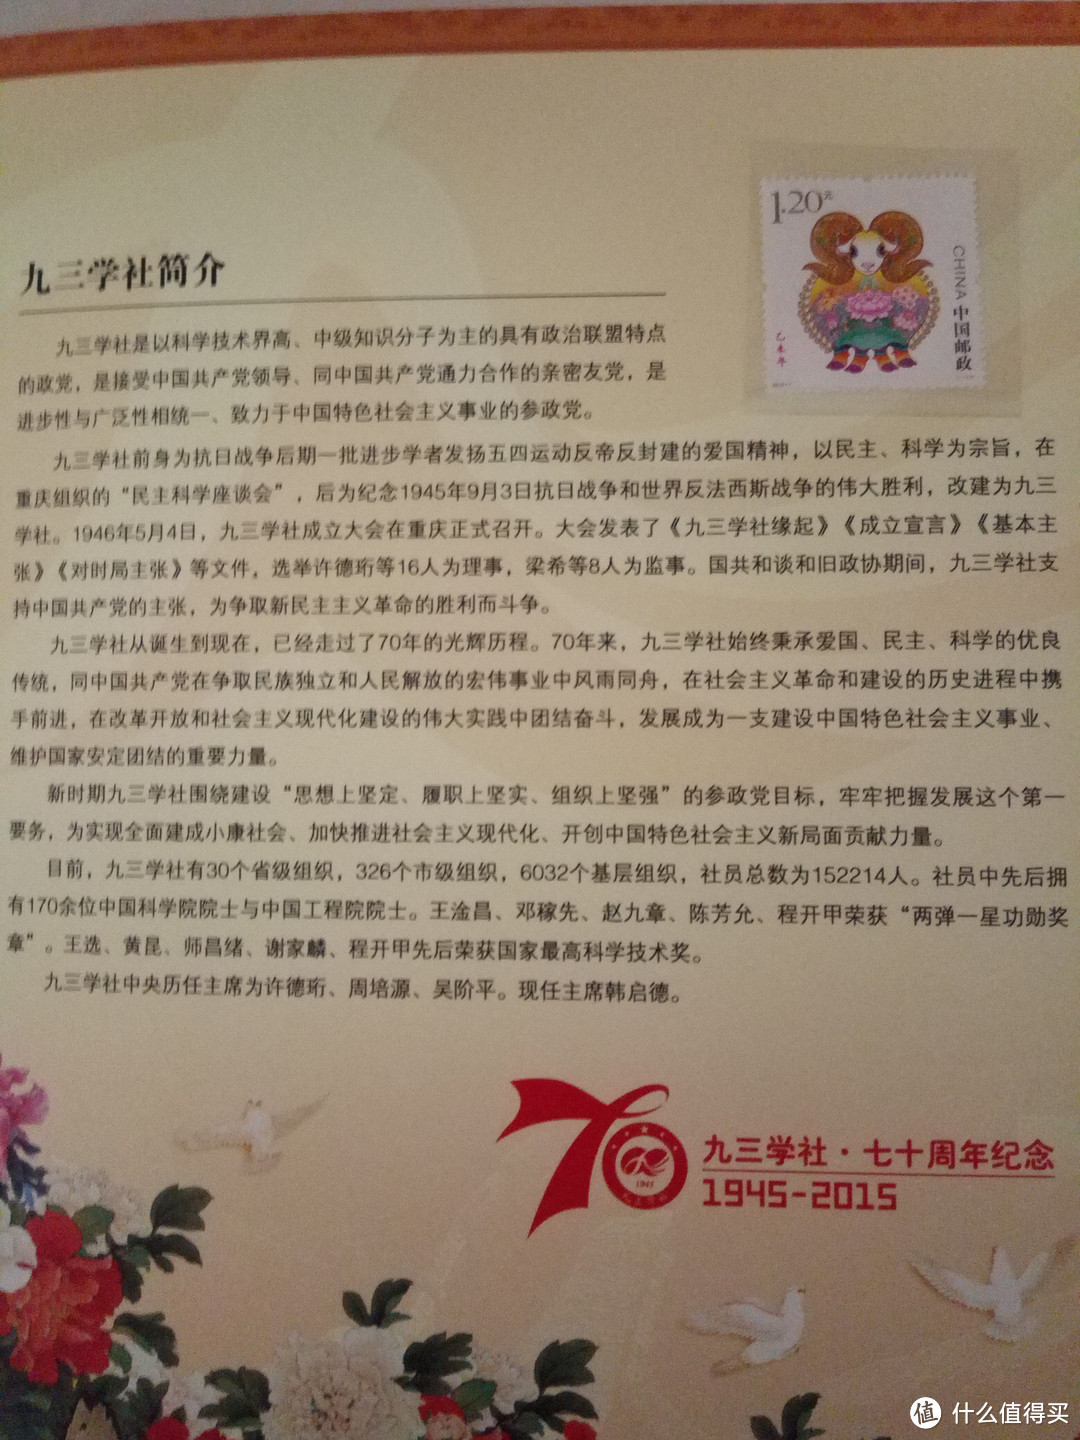 九三学社70周年纪念邮票晒物